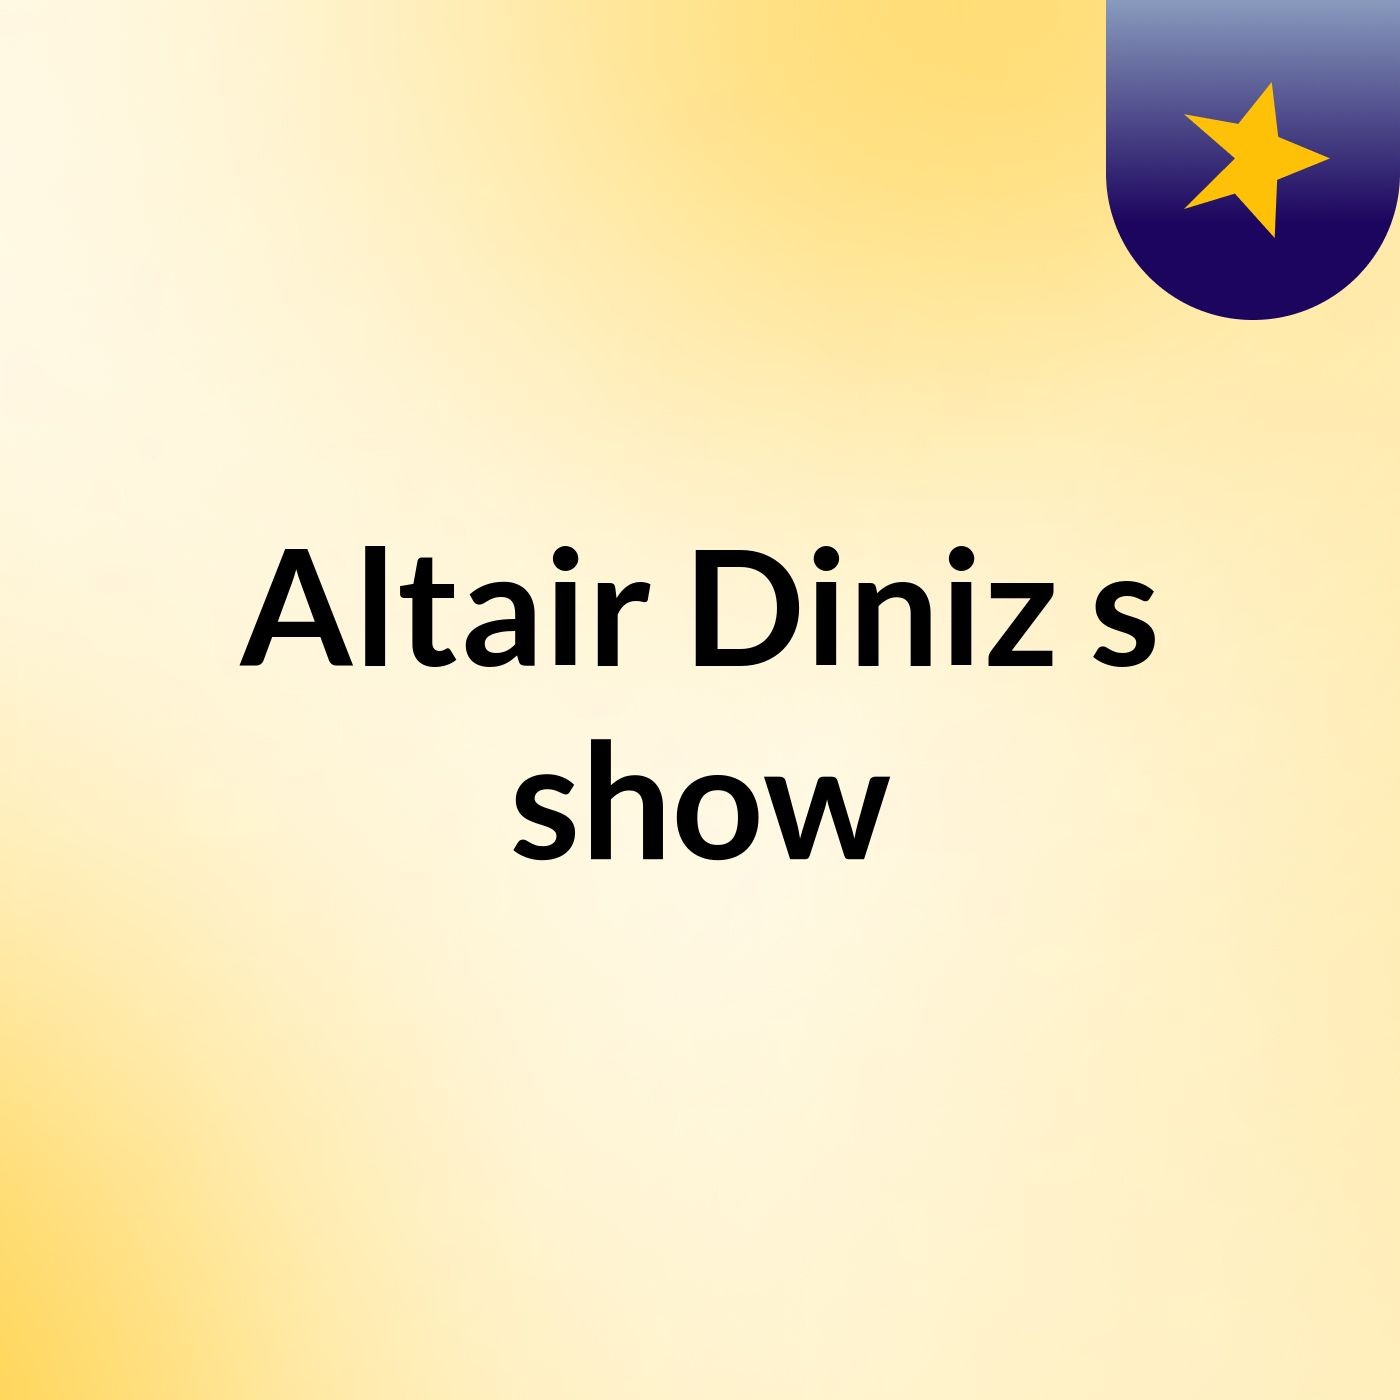 Altair Diniz's show